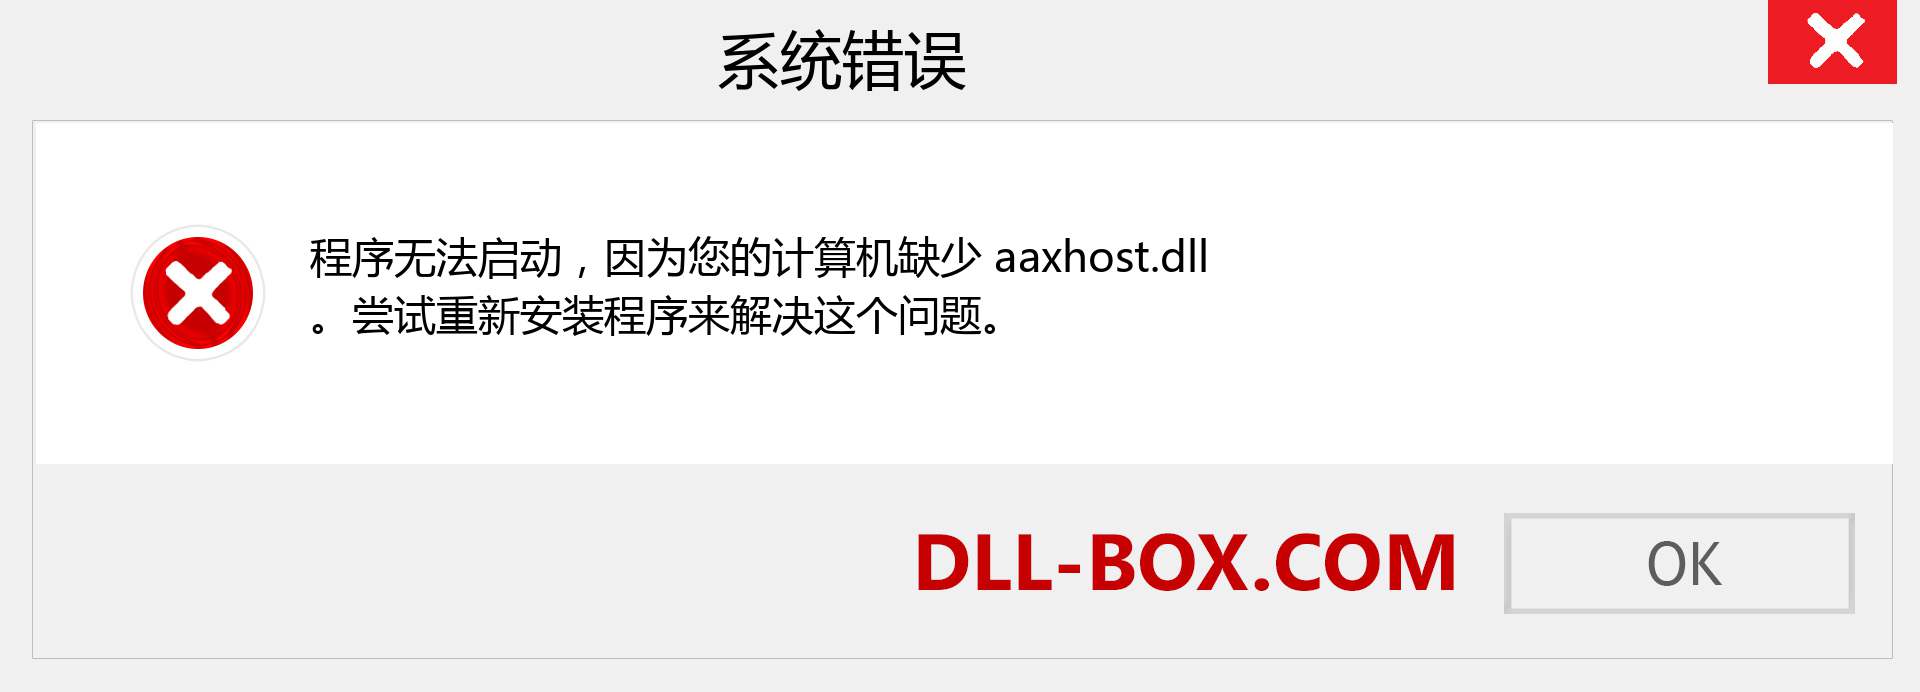 aaxhost.dll 文件丢失？。 适用于 Windows 7、8、10 的下载 - 修复 Windows、照片、图像上的 aaxhost dll 丢失错误